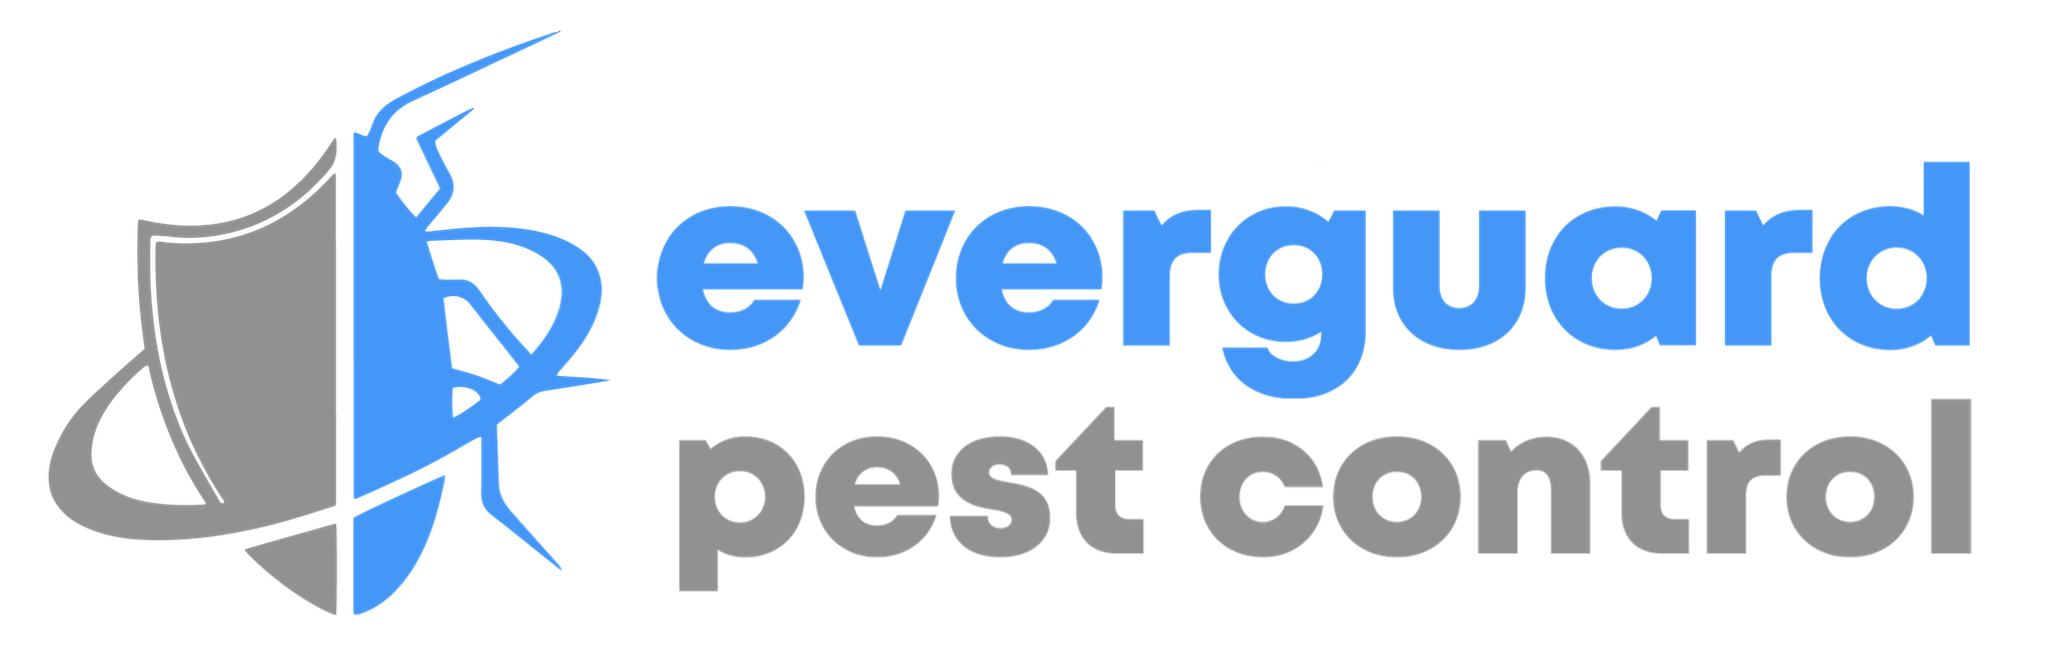 Everguard Pest Control